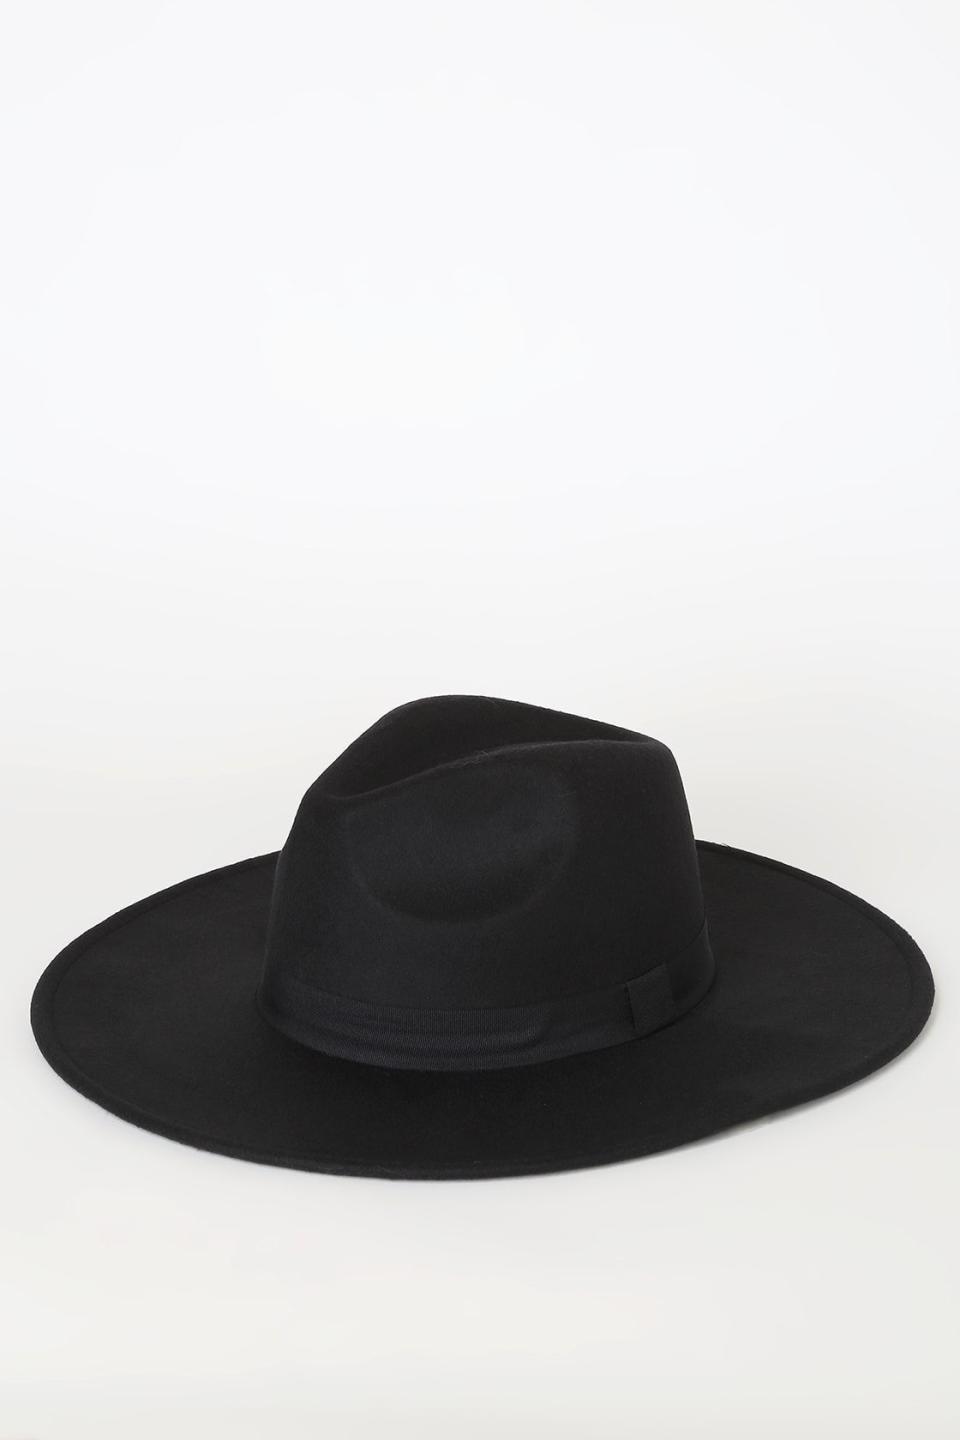 10) Wide Brim Fedora Hat